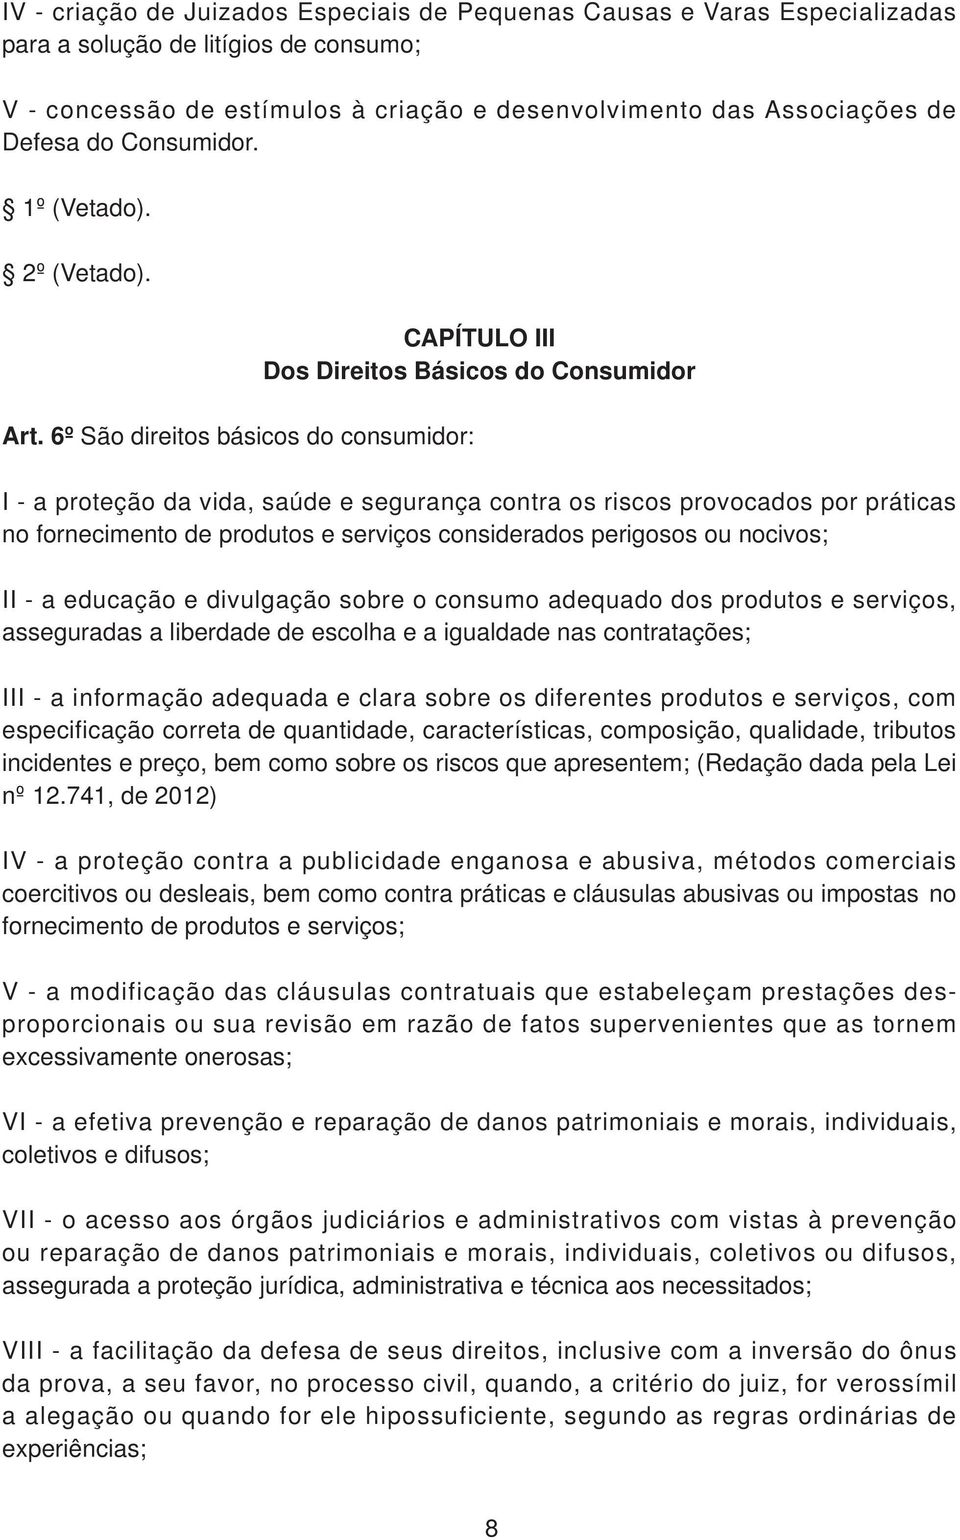 6º São direitos básicos do consumidor: CAPÍTULO III Dos Direitos Básicos do Consumidor I - a proteção da vida, saúde e segurança contra os riscos provocados por práticas no fornecimento de produtos e